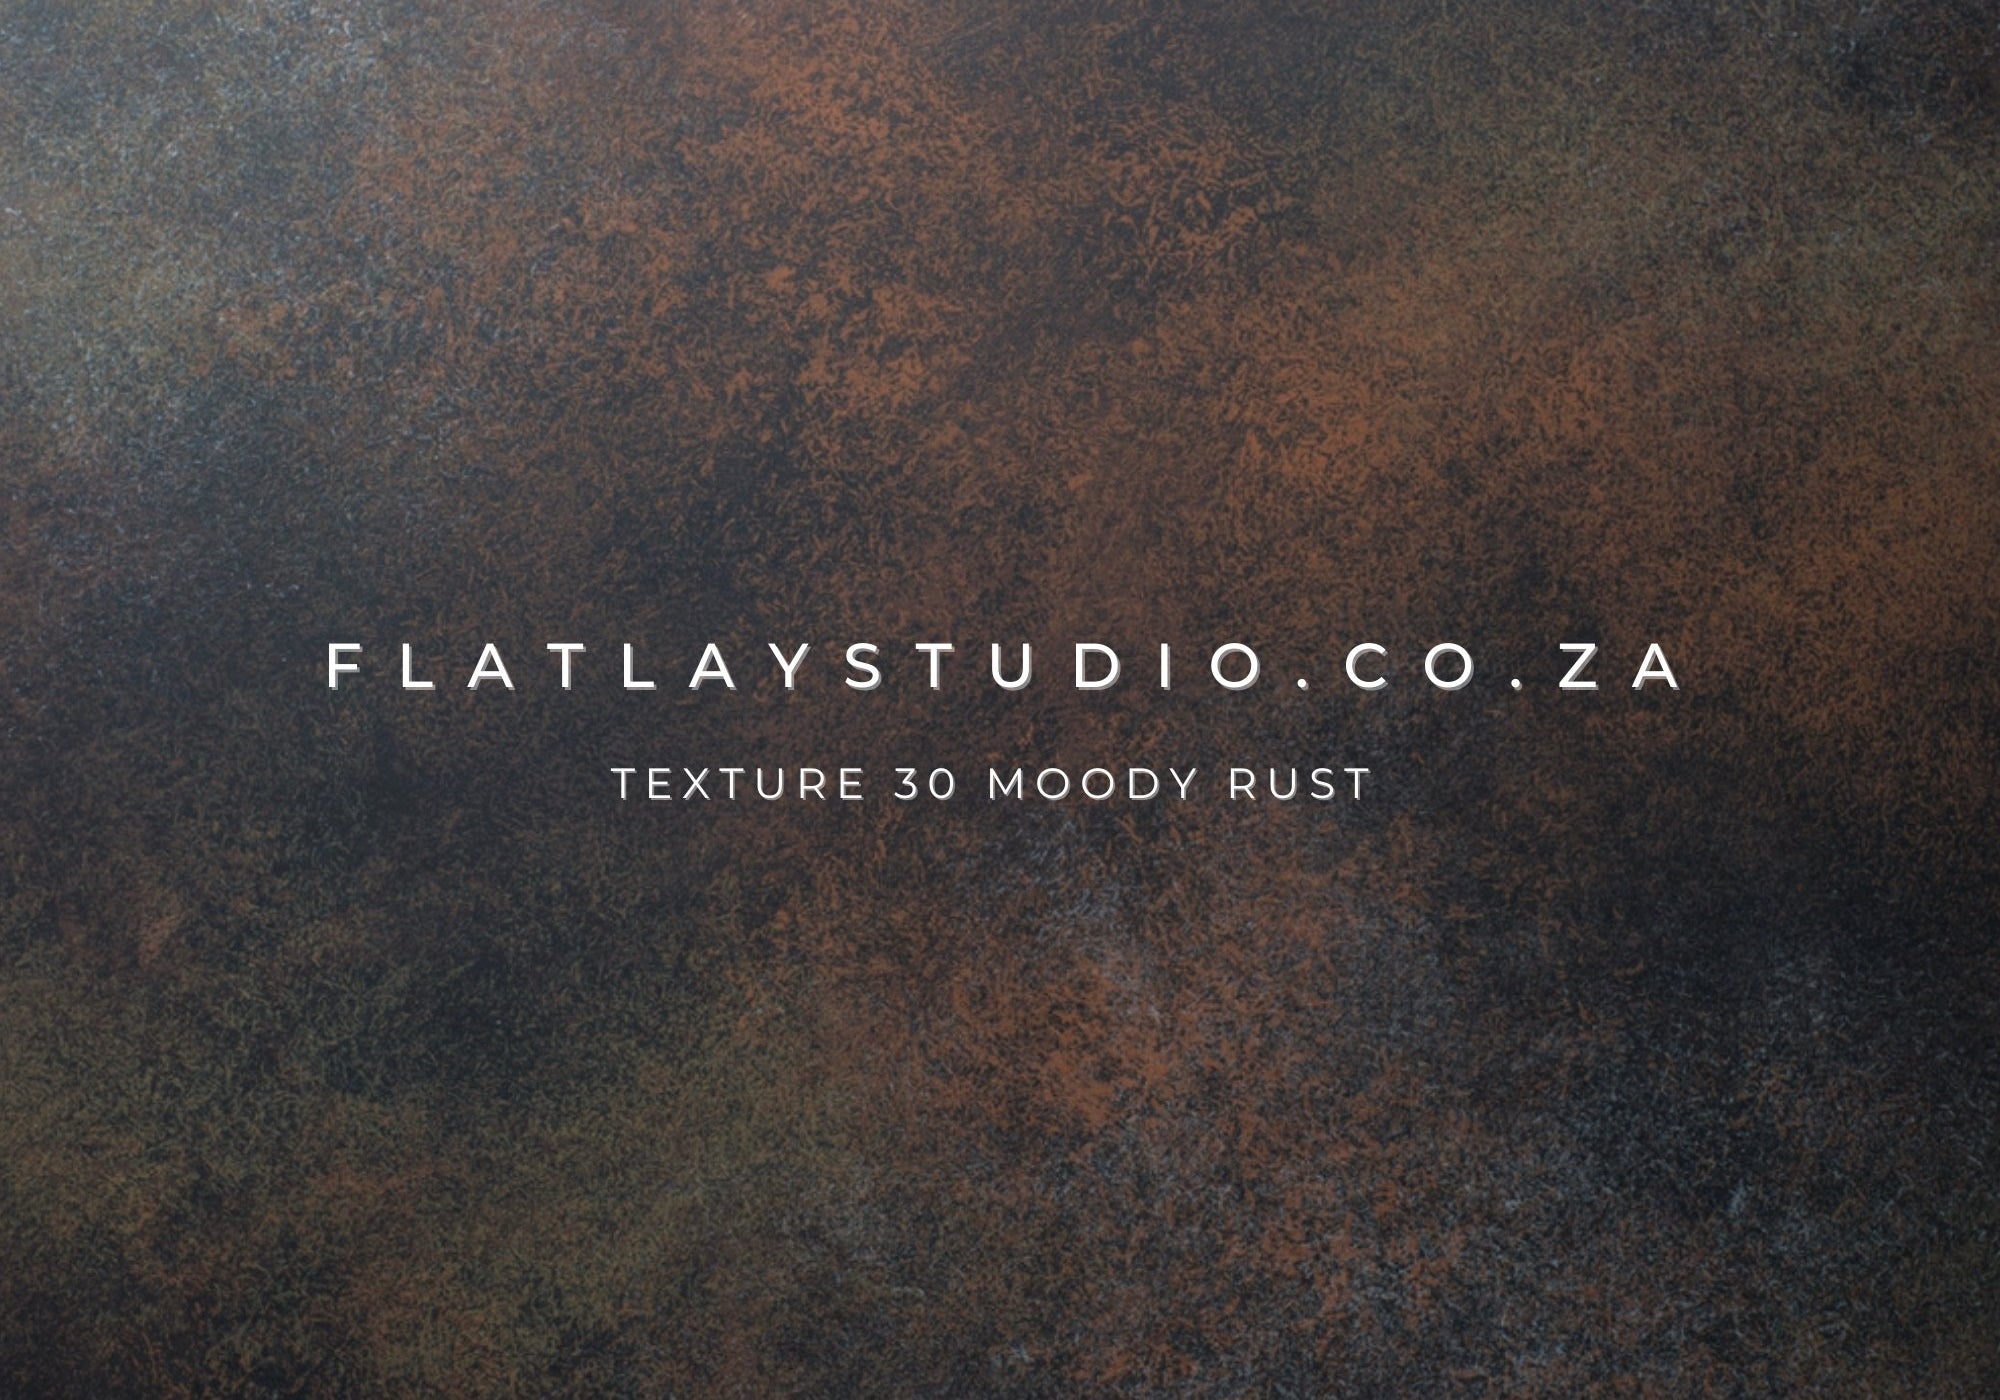 Texture 30 Moody Rust - FlatlayStudio Flatlay Styling Board